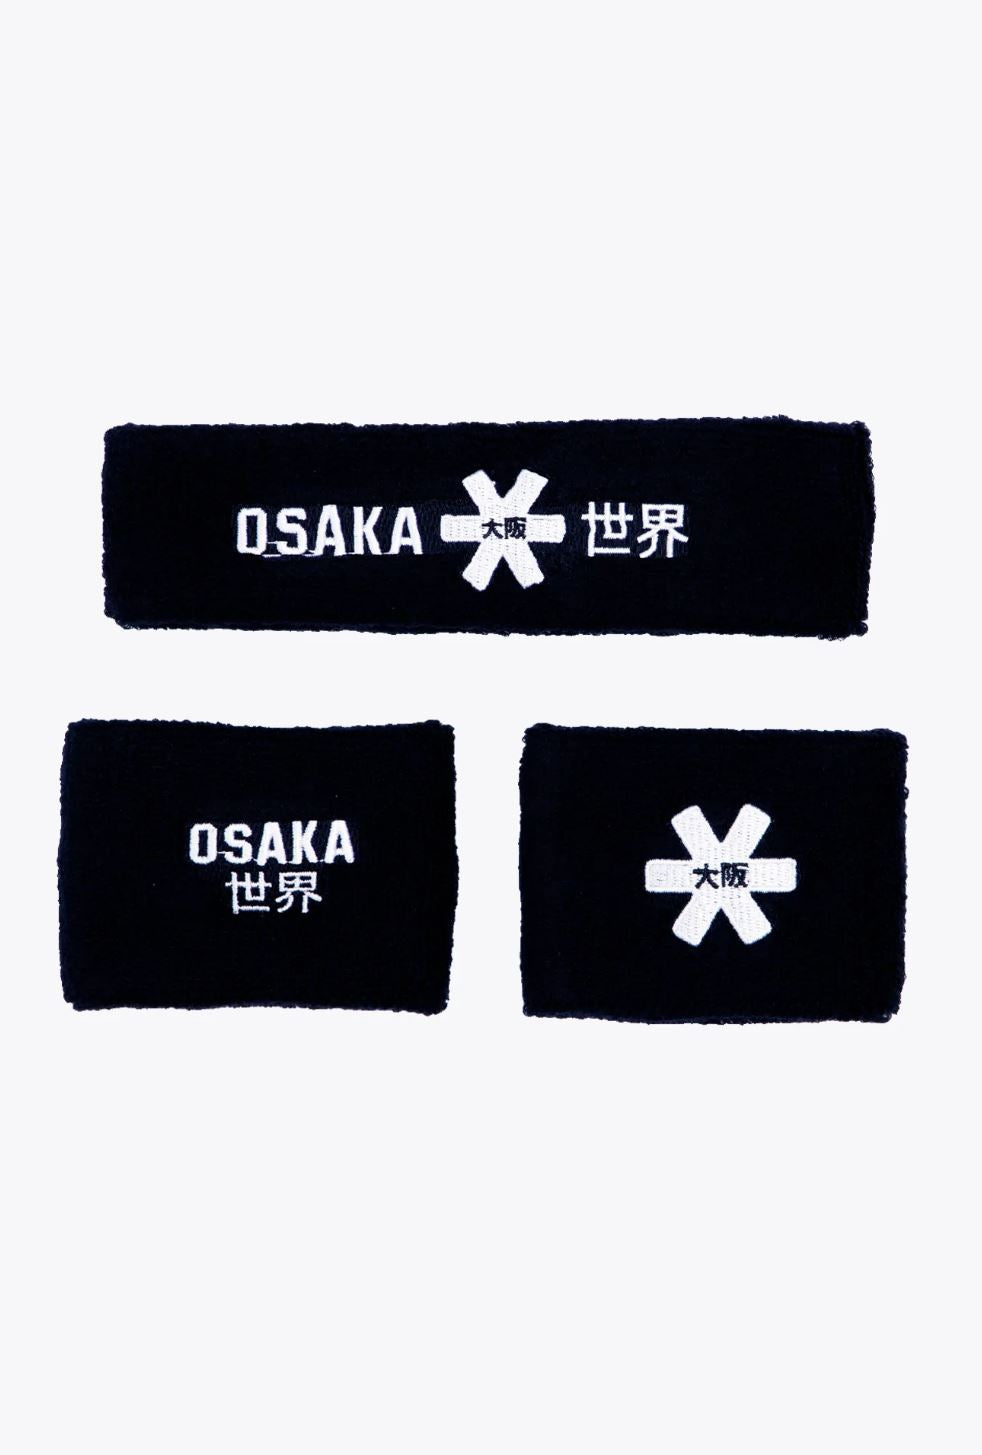 Osaka Schweißband-Set (Französische Marine)